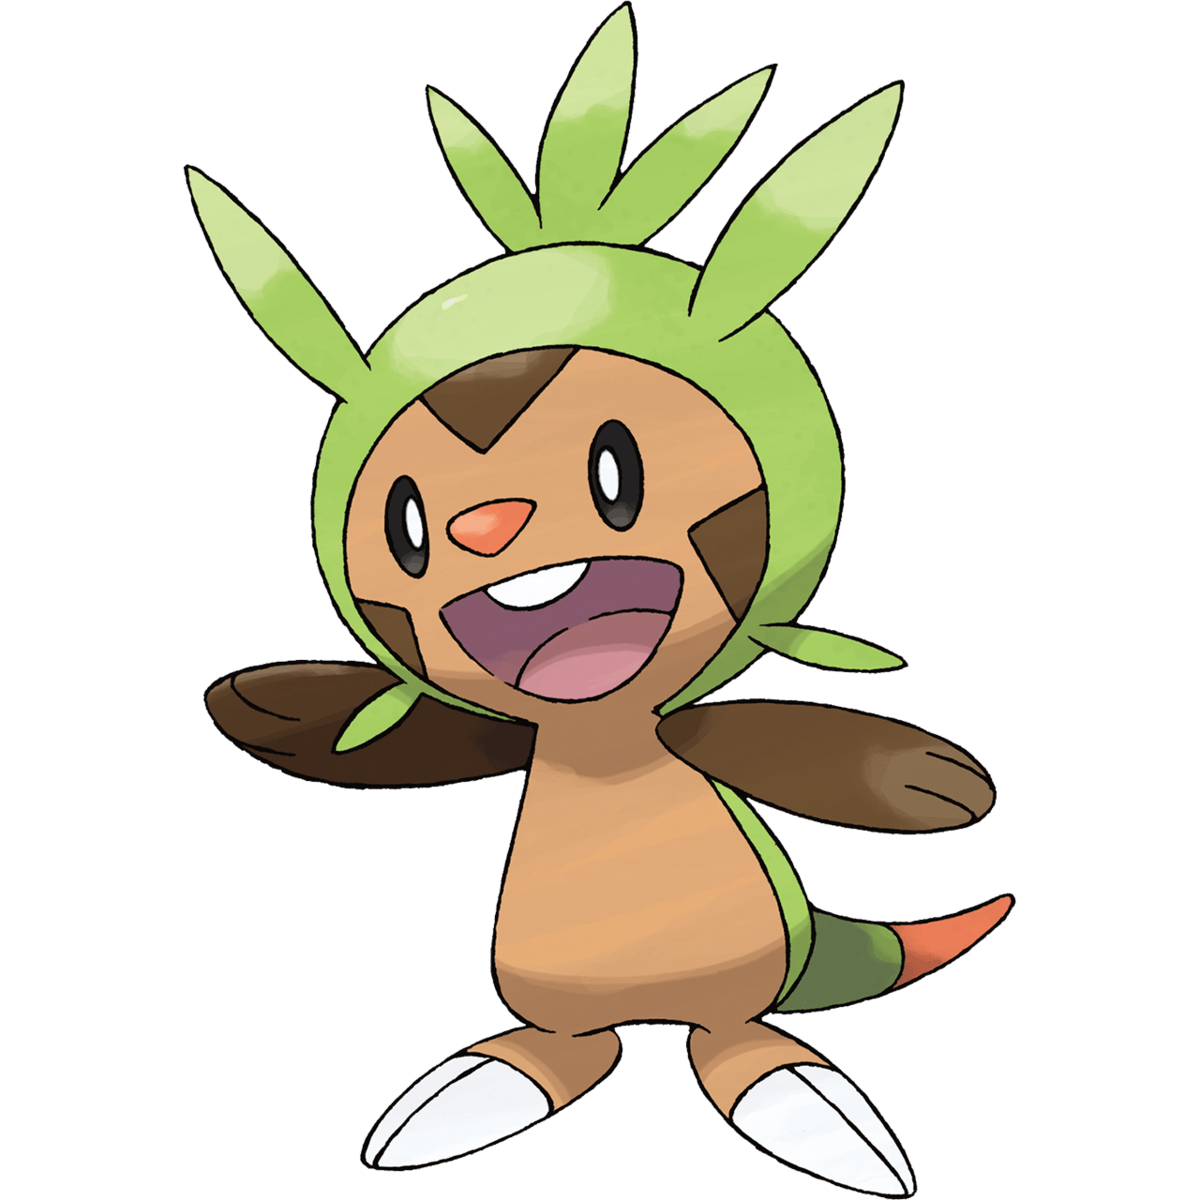 Chespin (Pokémon), The Community Driven Pokémon